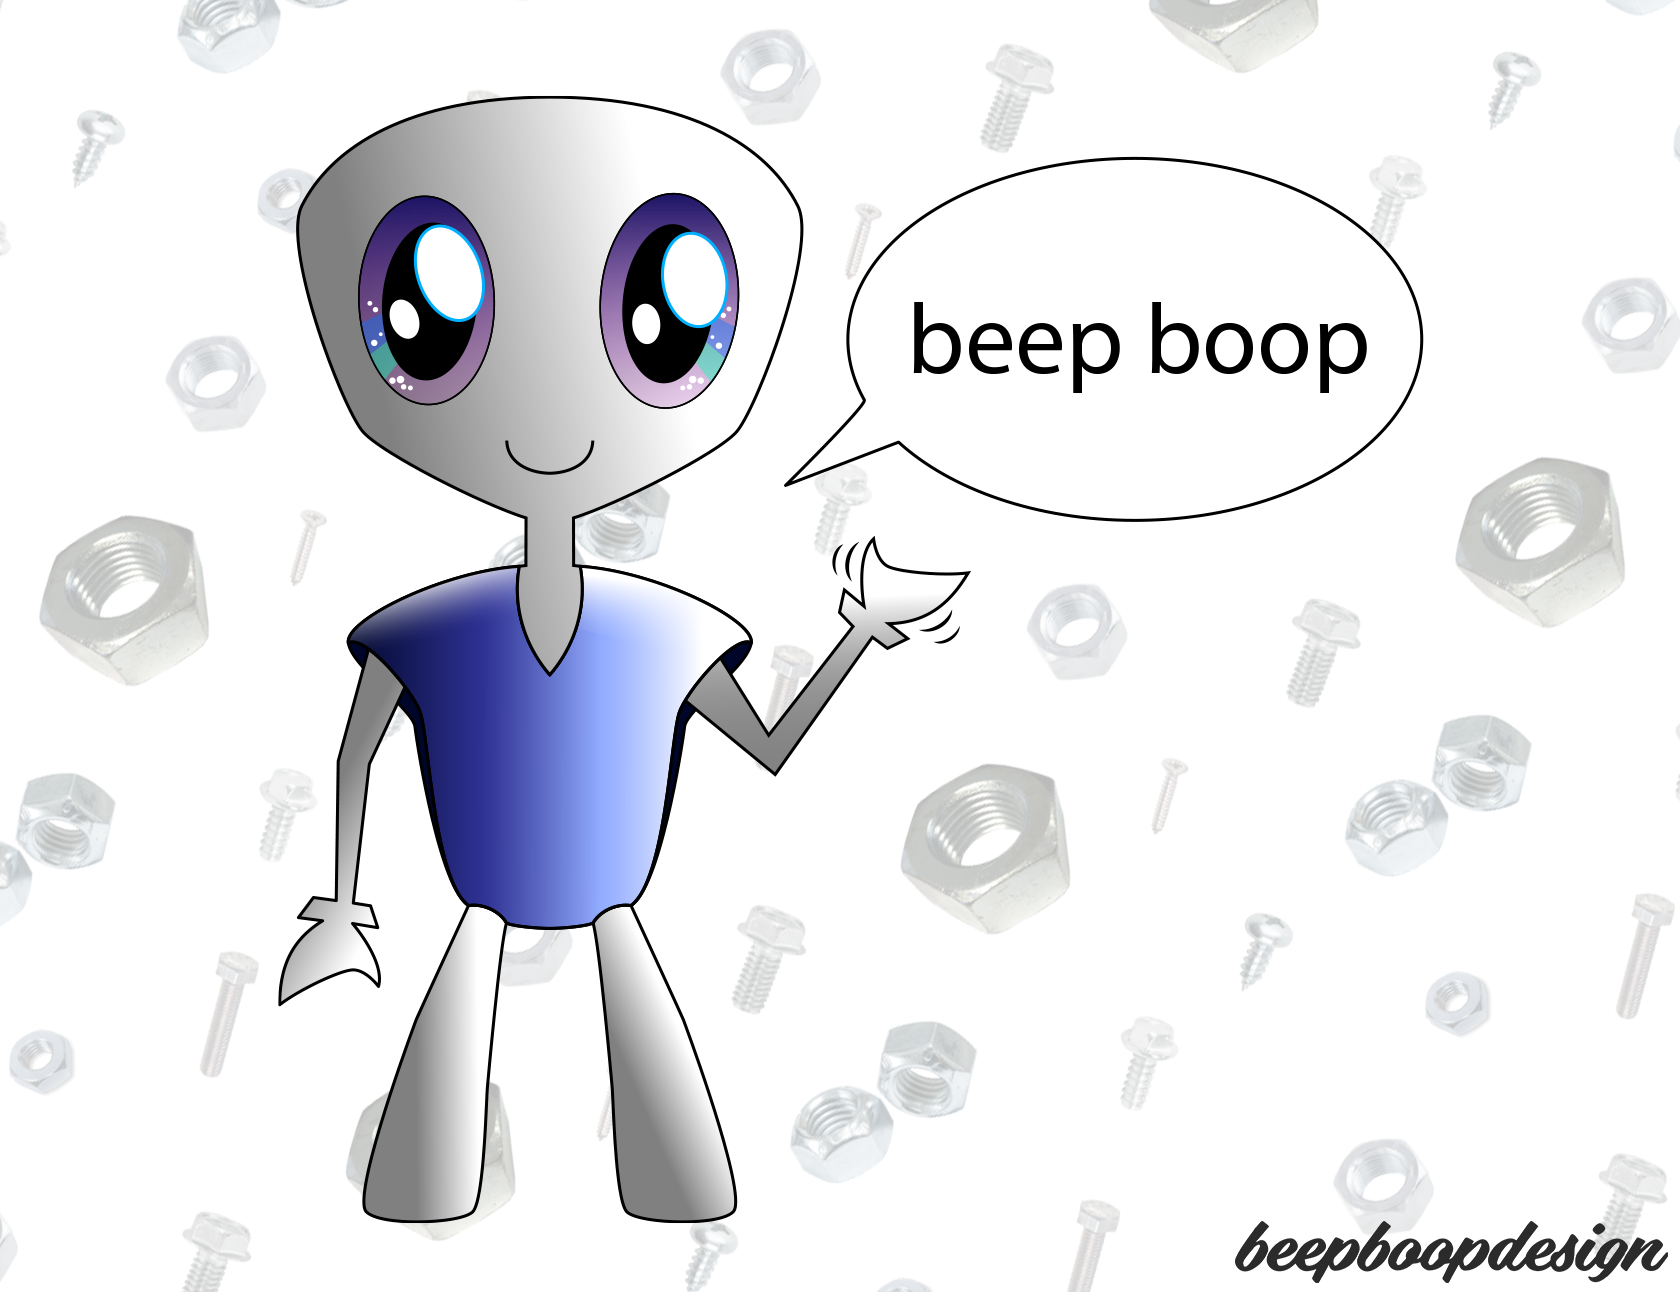 Beep boop